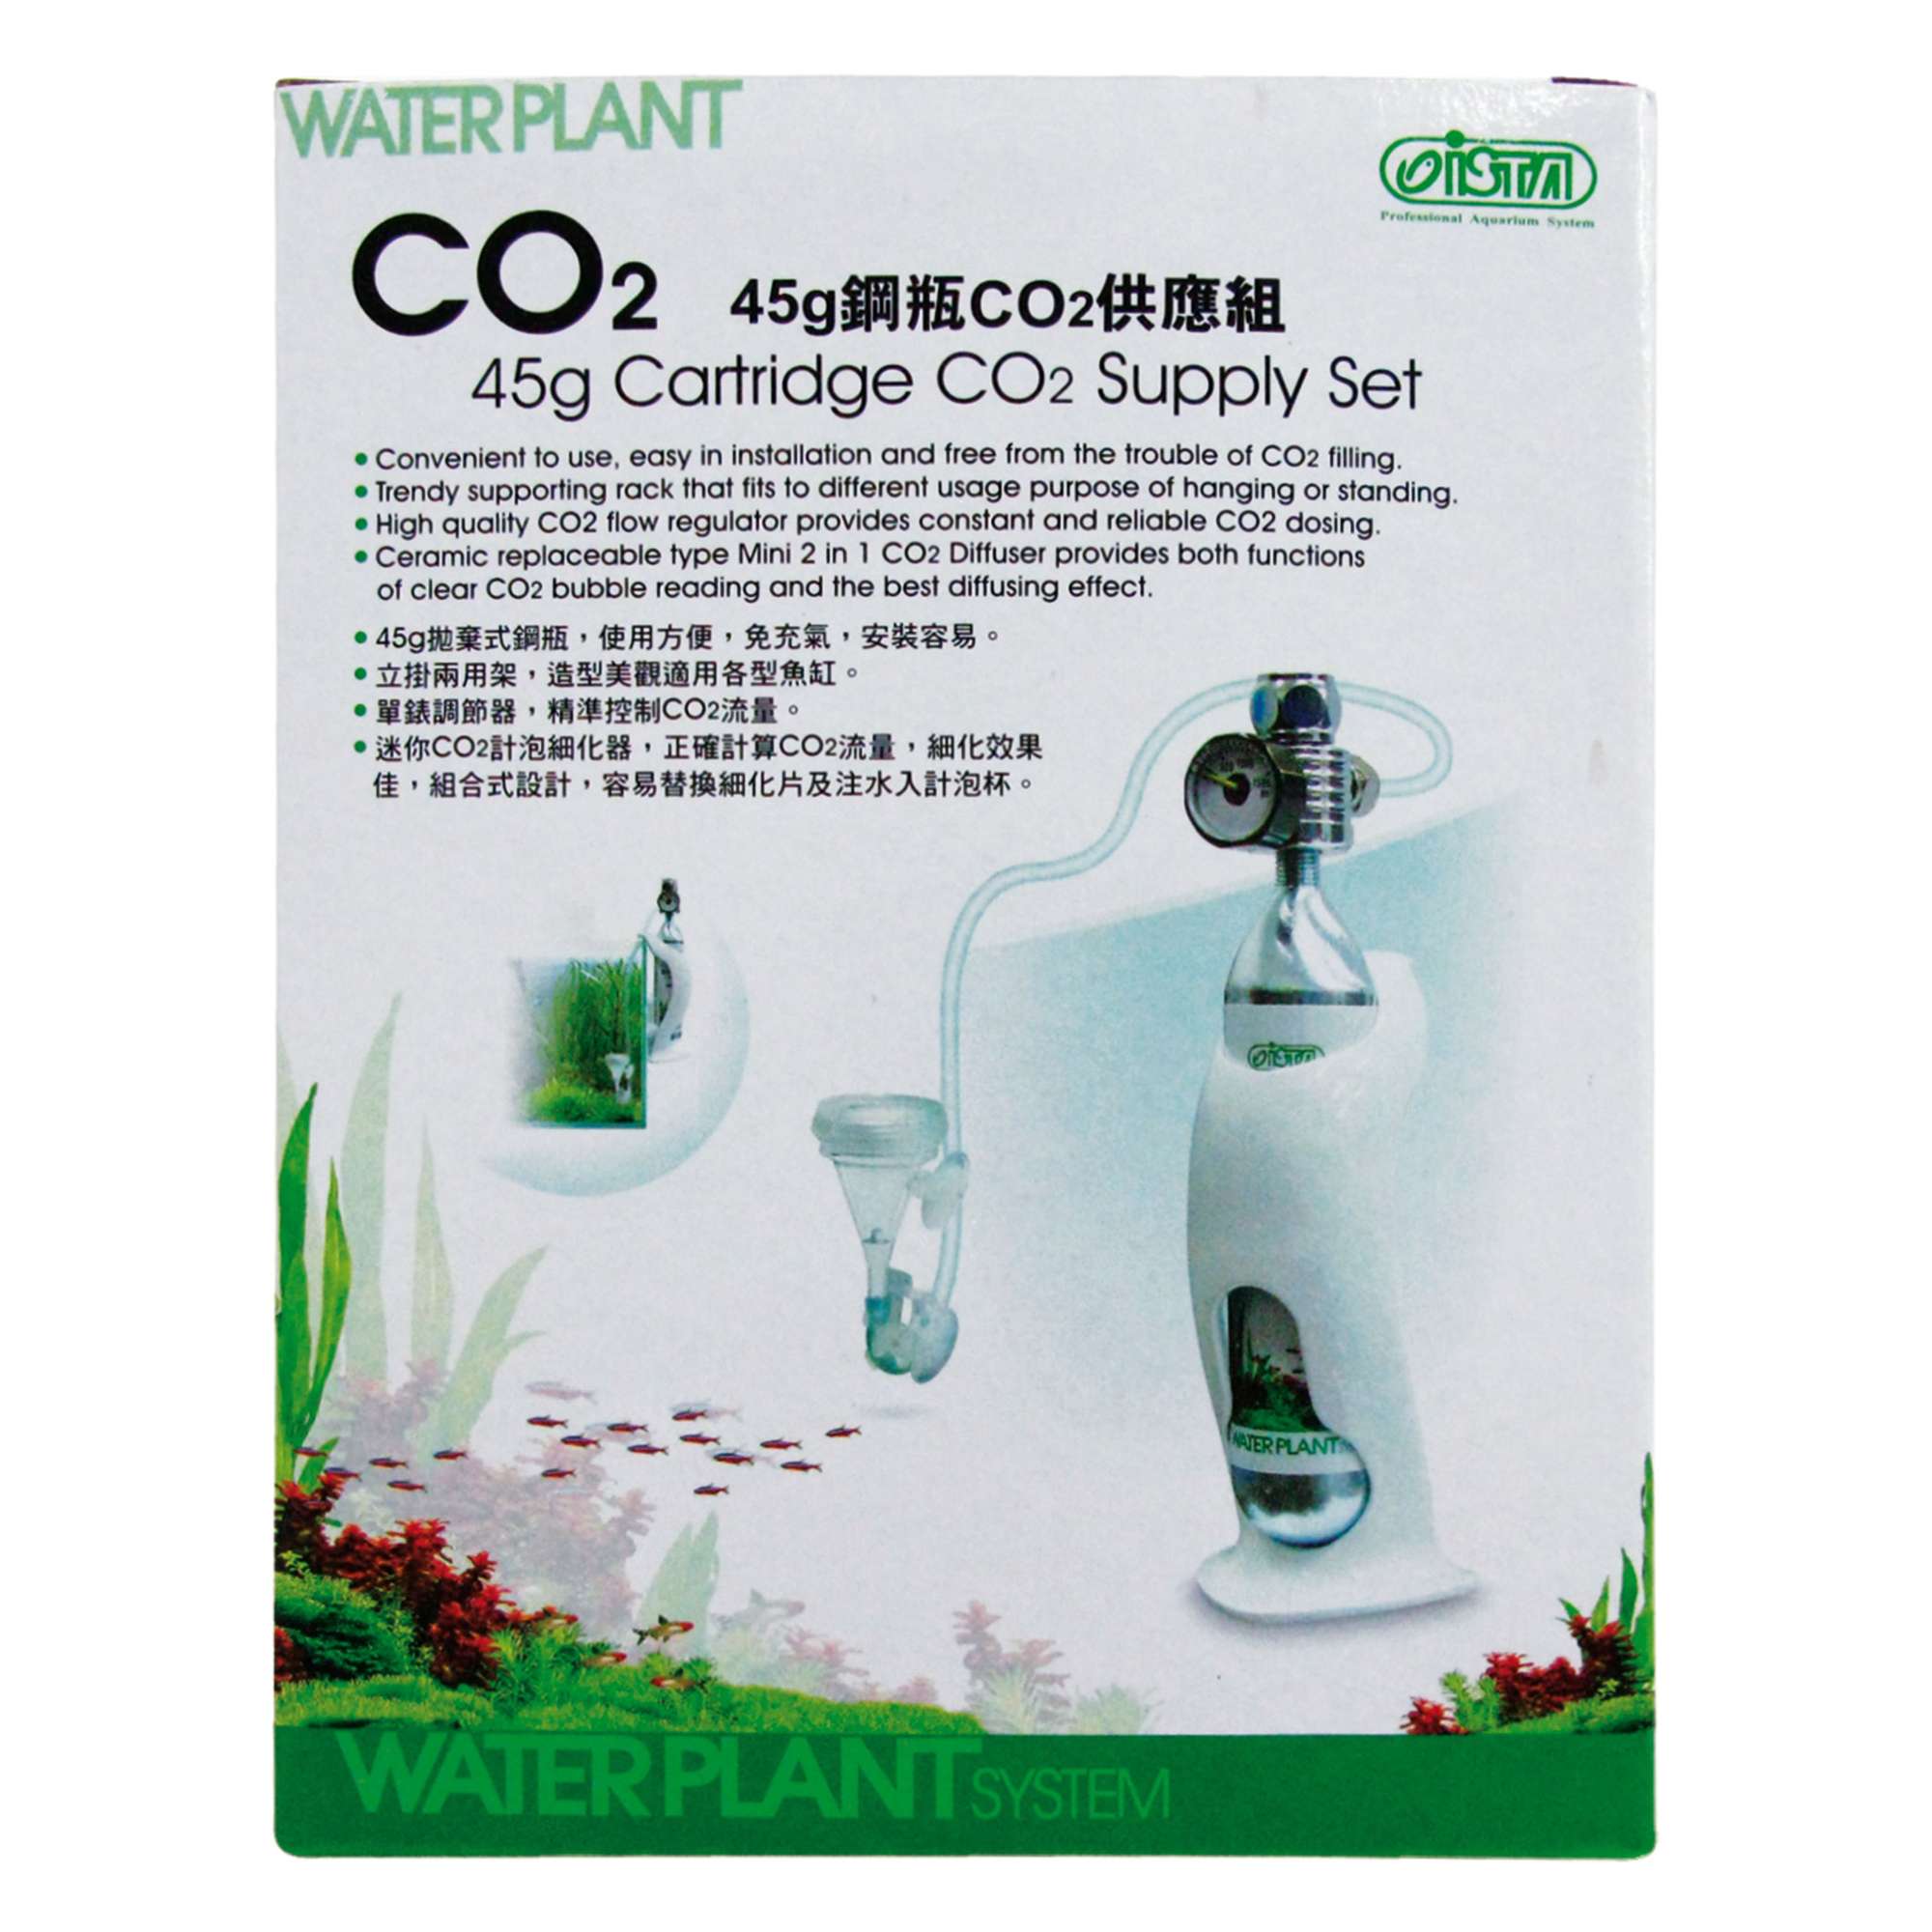 Botella desechable de CO2 Aquatic Nature para equipos de CO2 - Ibercan